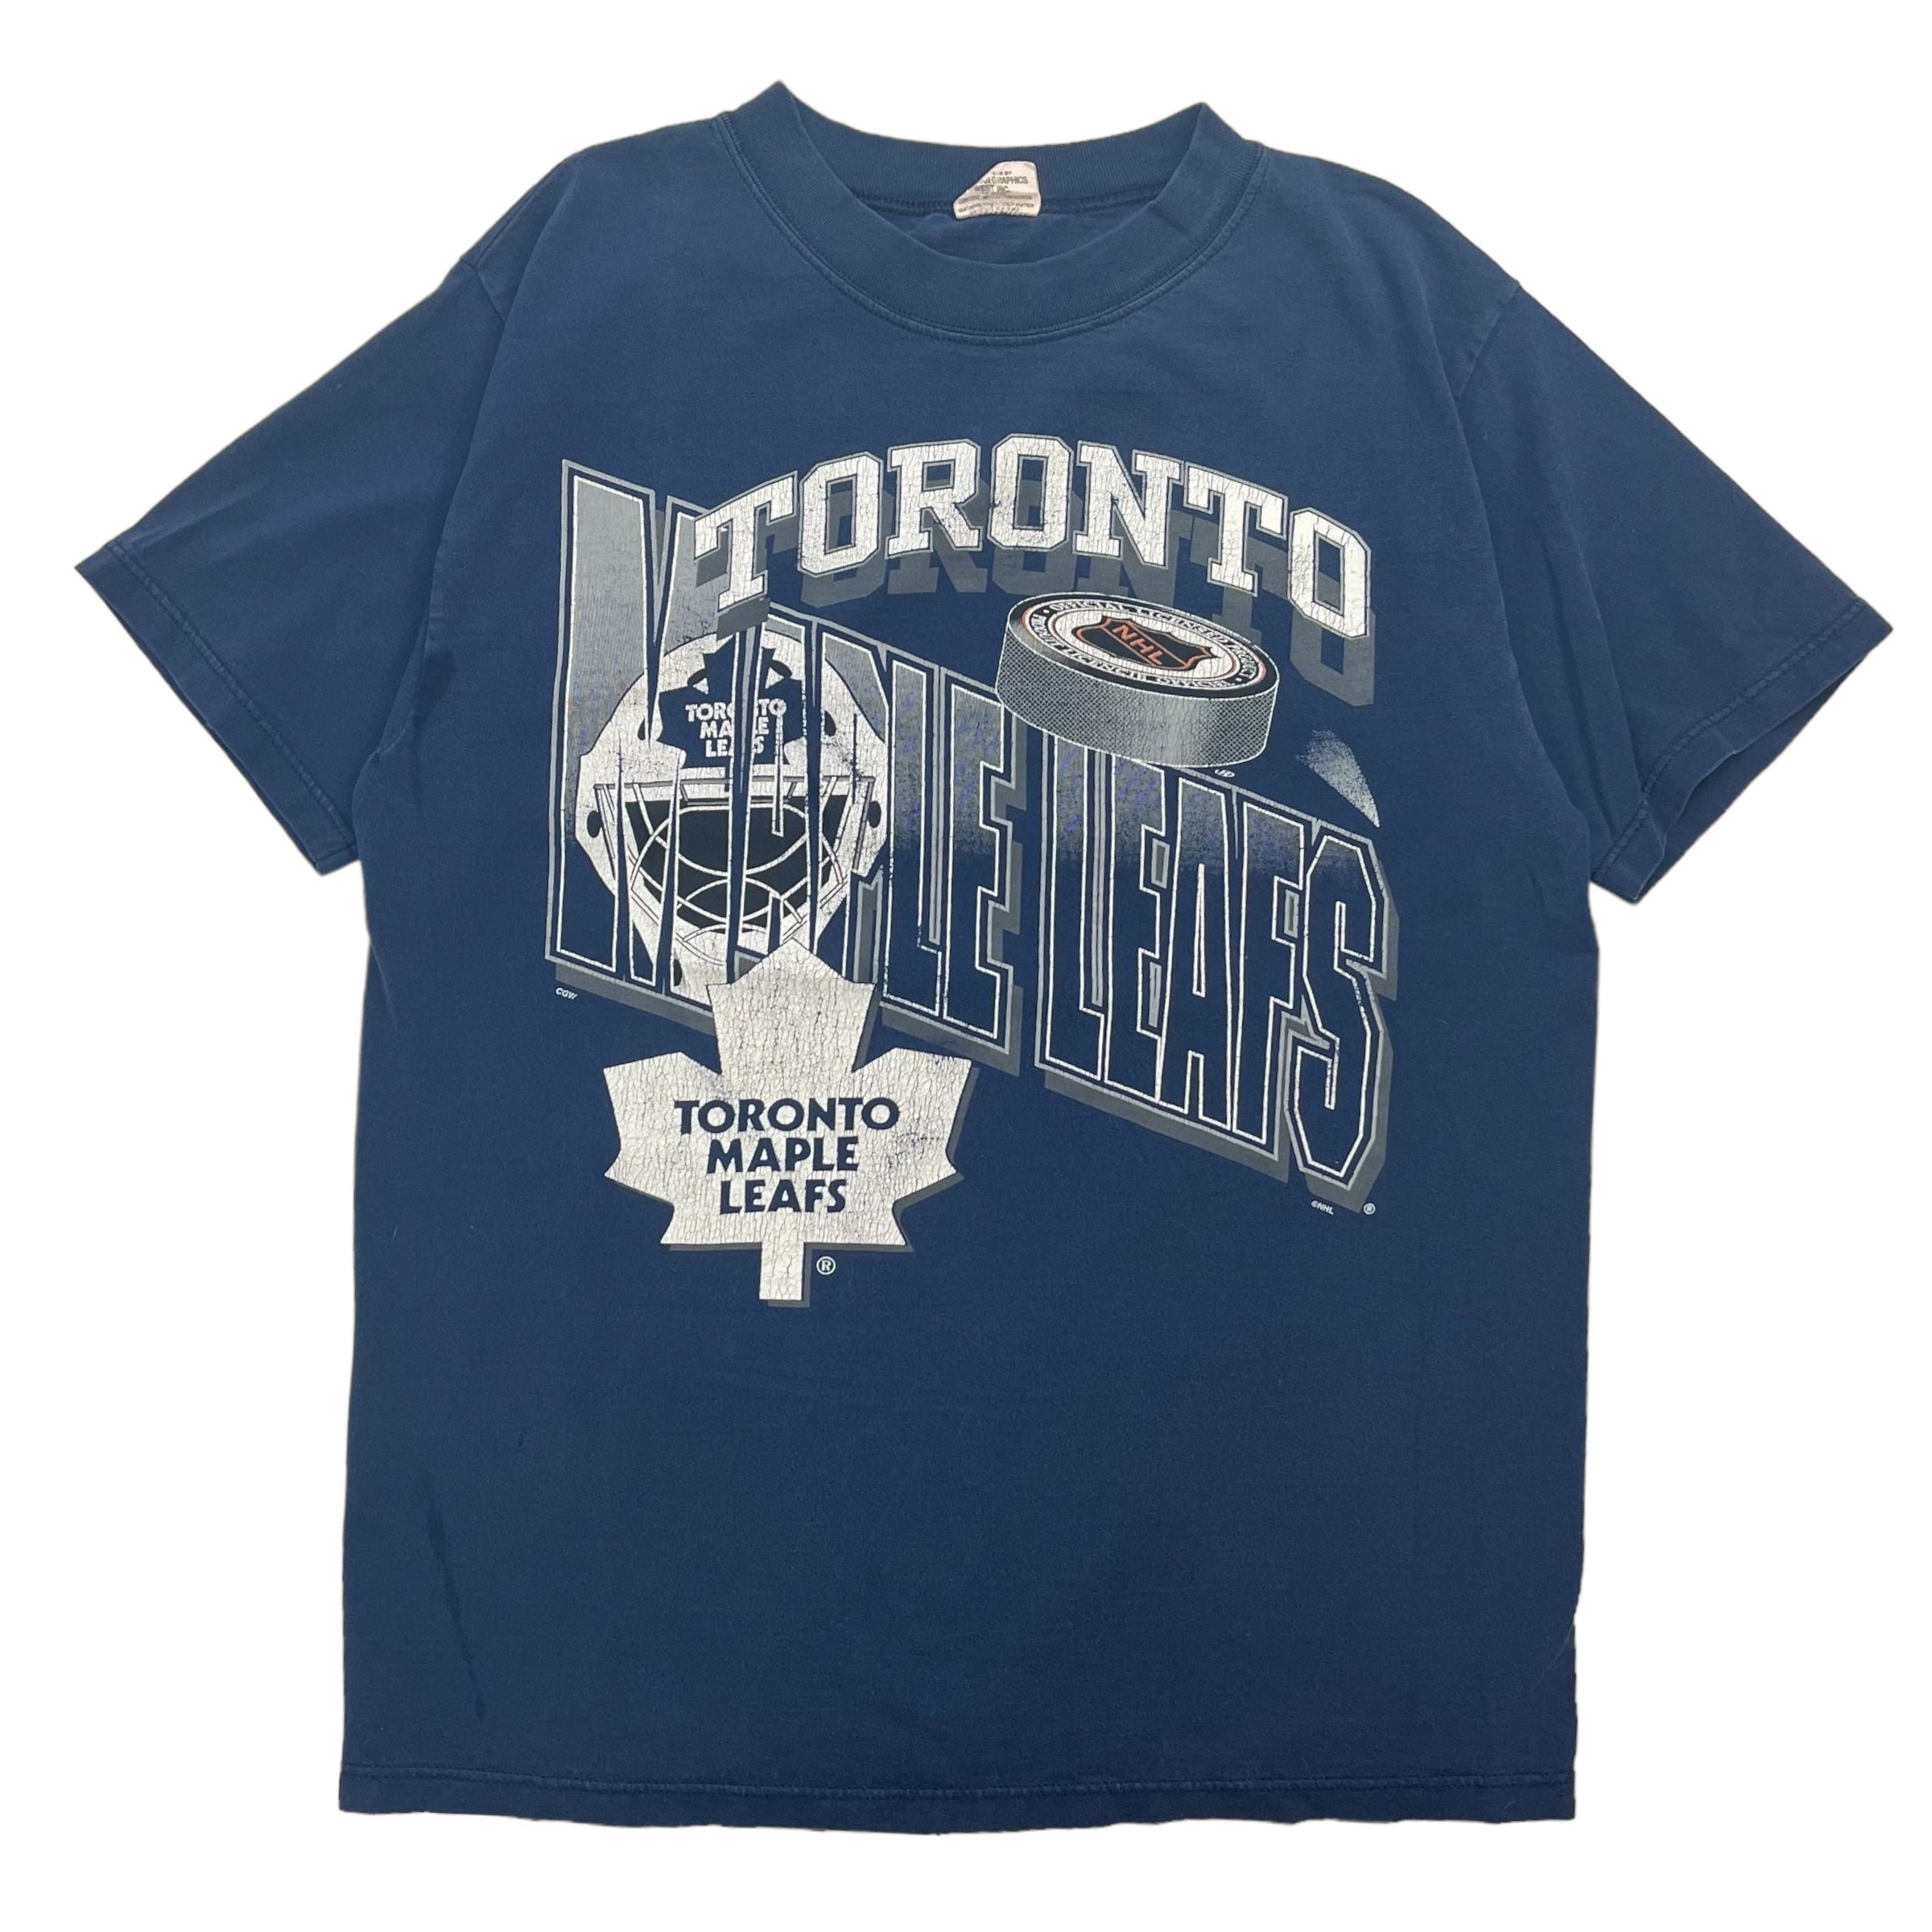 Vintage Toronto Maple Leafs Tee Navy